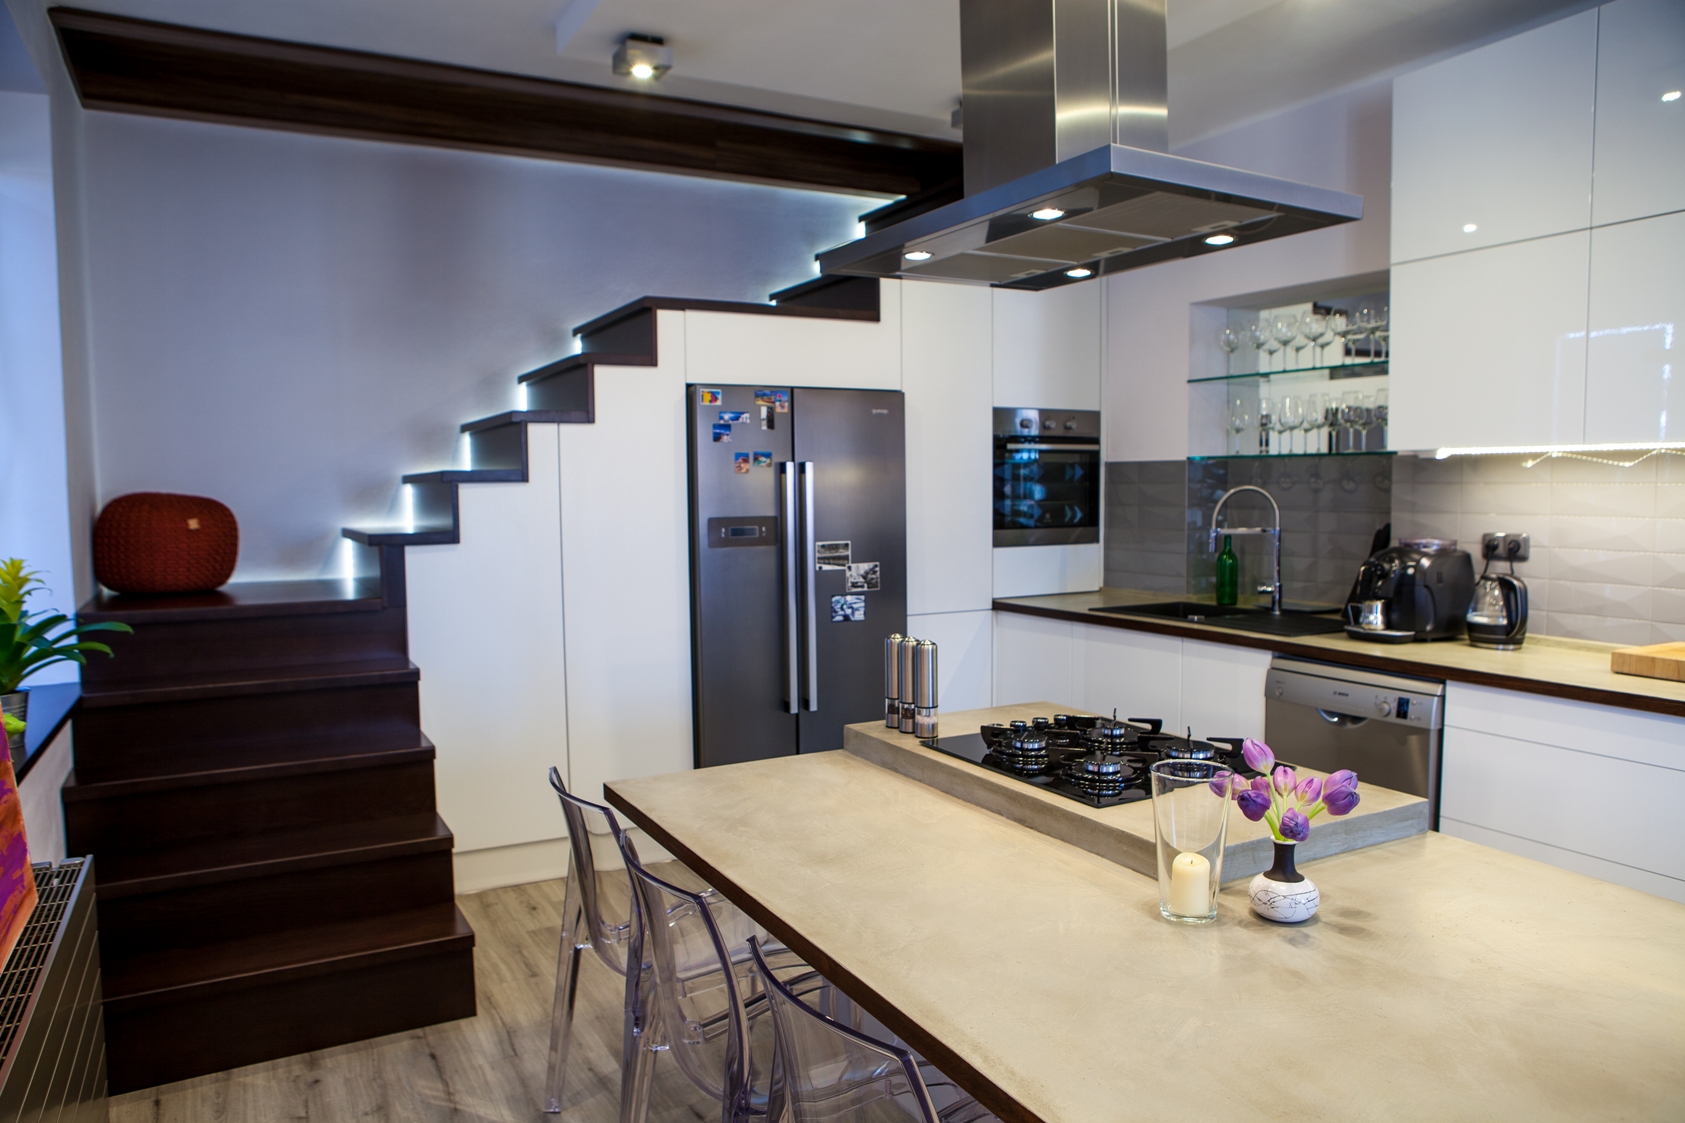 Barbora Sacher: Kuchyň pod schody, Schodiště se zabudovanou kuchyňskou linkou